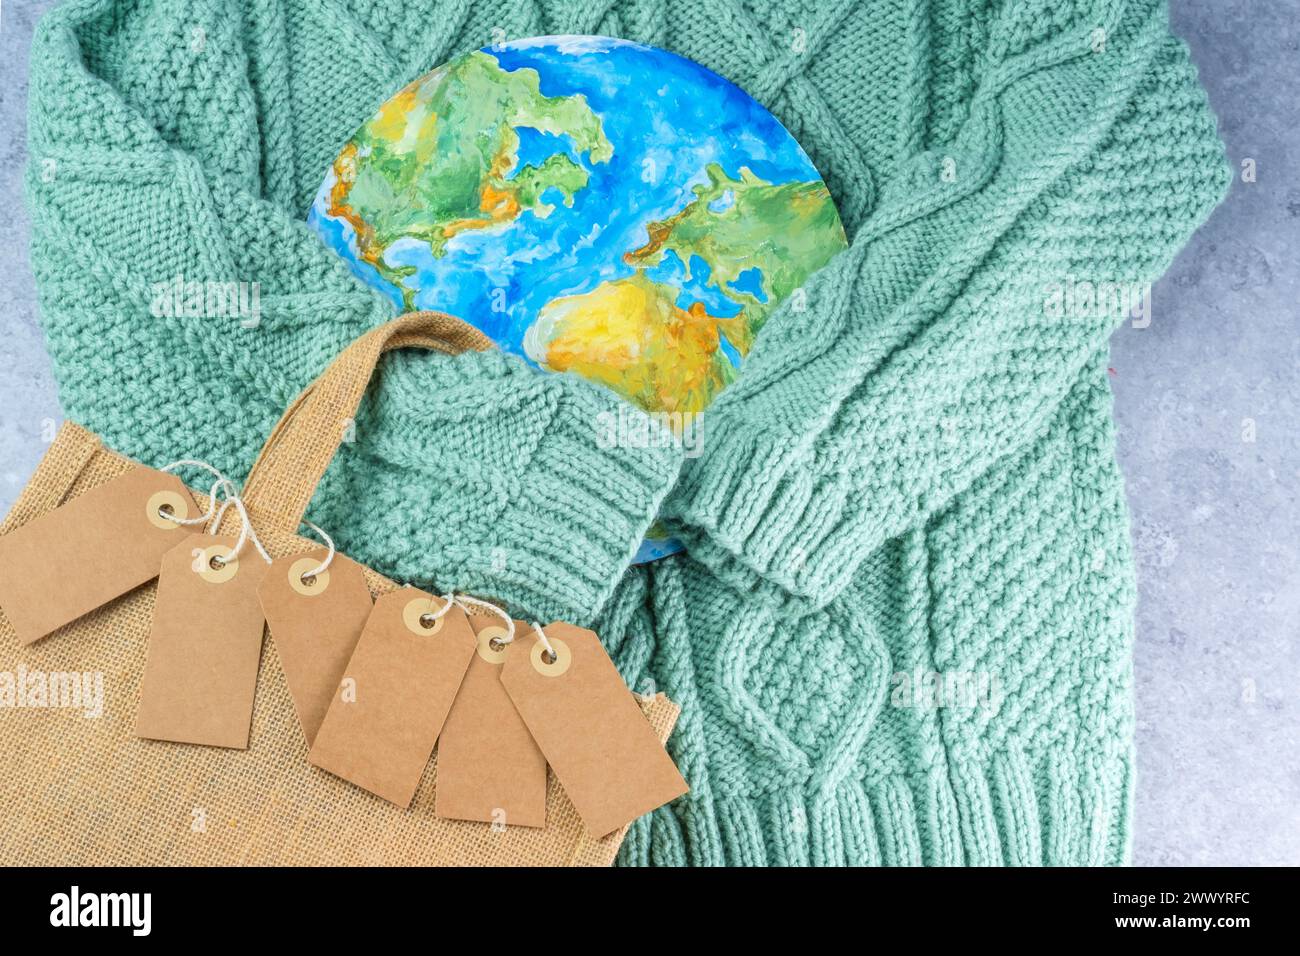 Die Pullover-Ärmel halten die Tags in der Umarmung des Planeten mit einer Öko-Tasche. Verantwortungsbewusster Konsum. Kreatives Konzept weniger kaufen Stockfoto